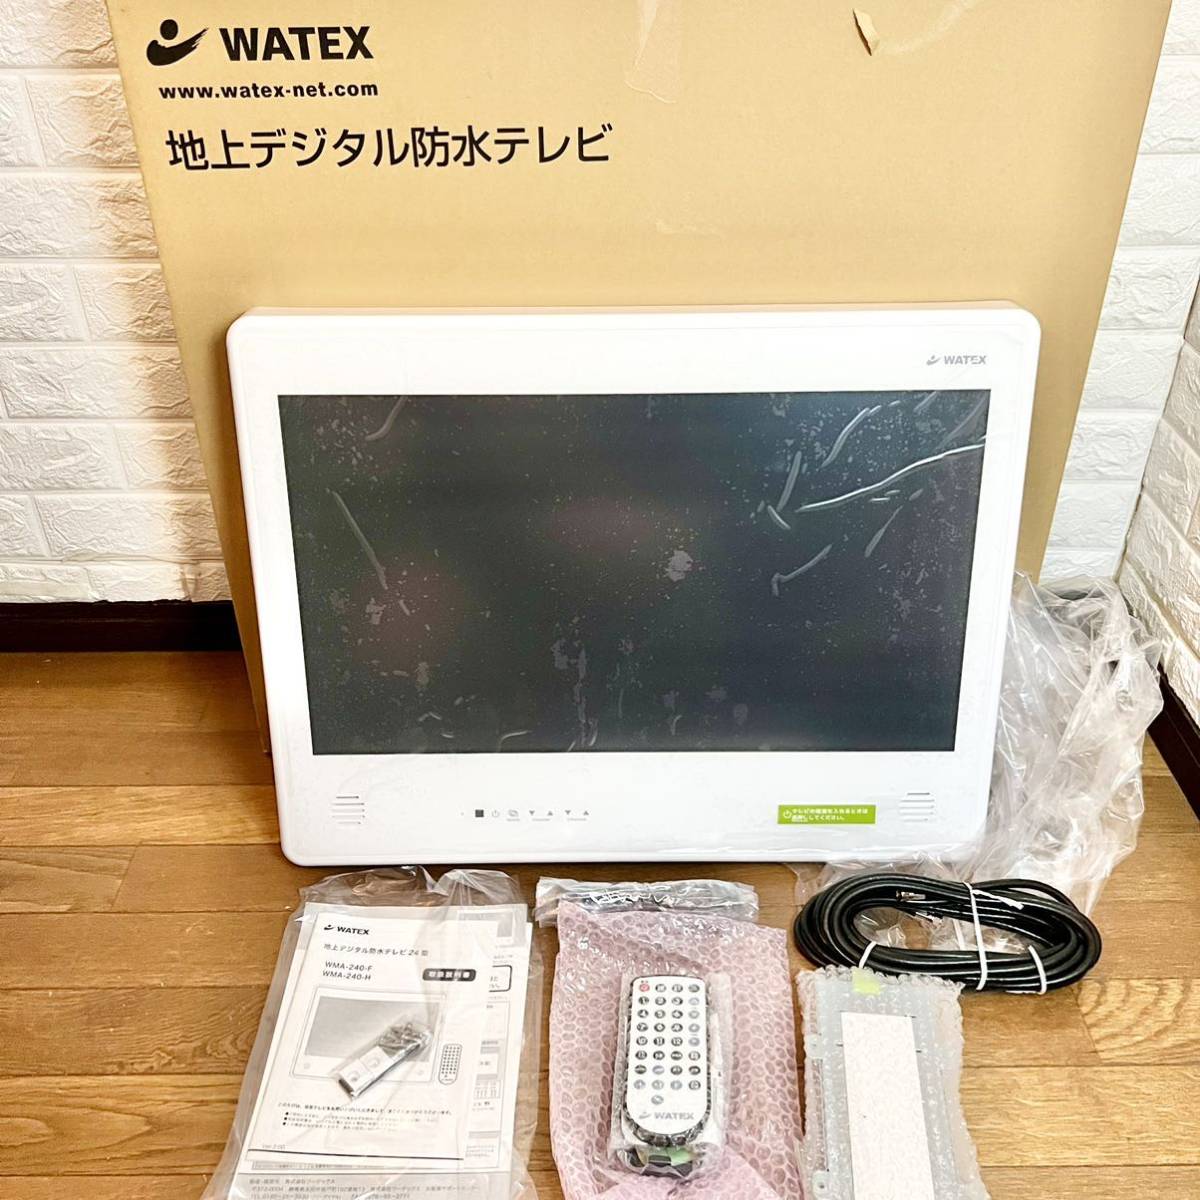 13799円 【在庫僅少】 WATEX ワーテックス ZTV160地上デジタル 防水テレビ